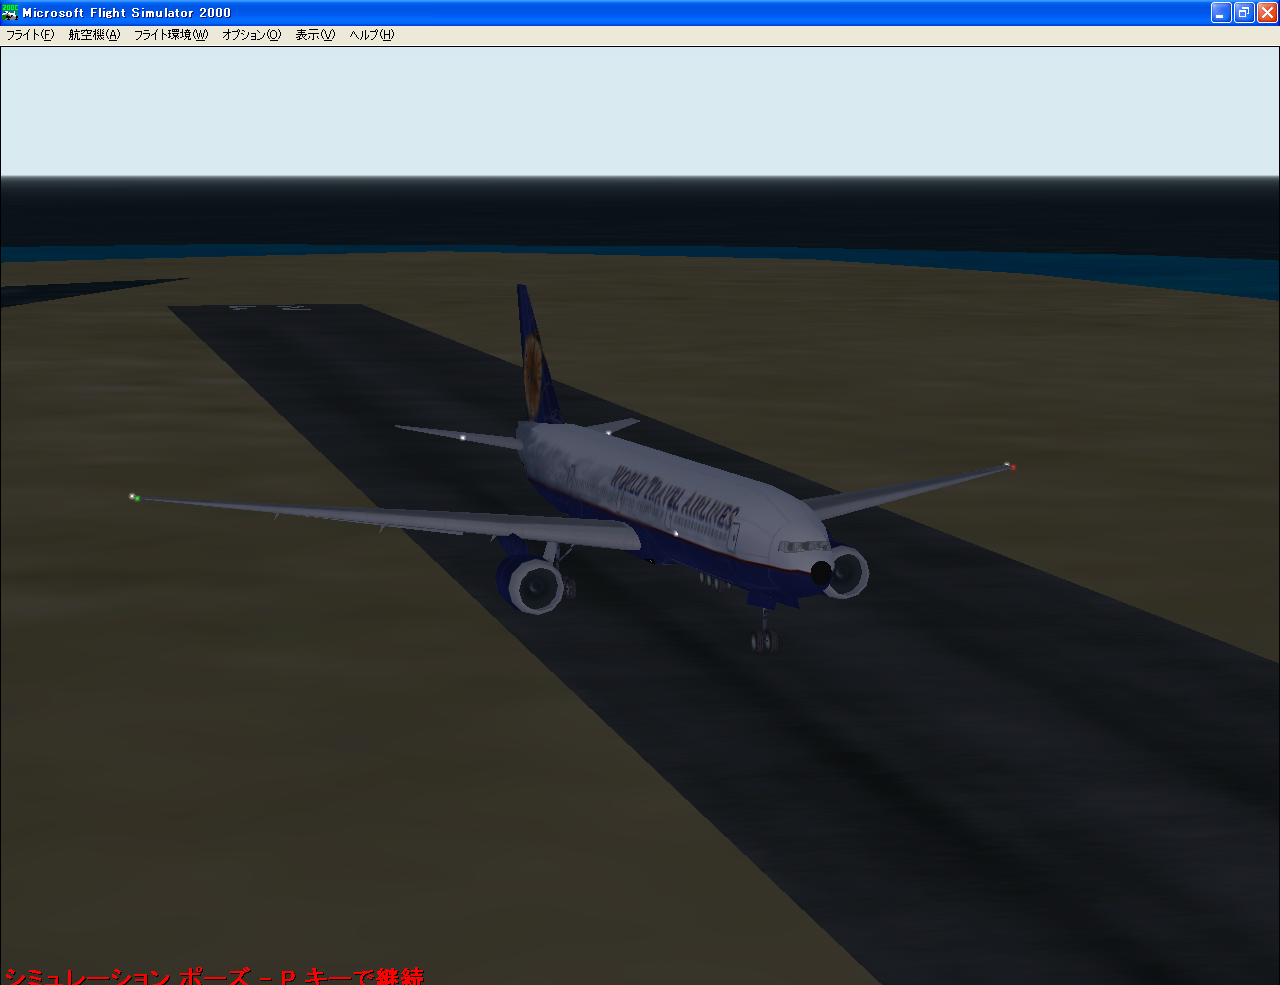 ツバルからやってきて着陸した状態(Boeing777-300)